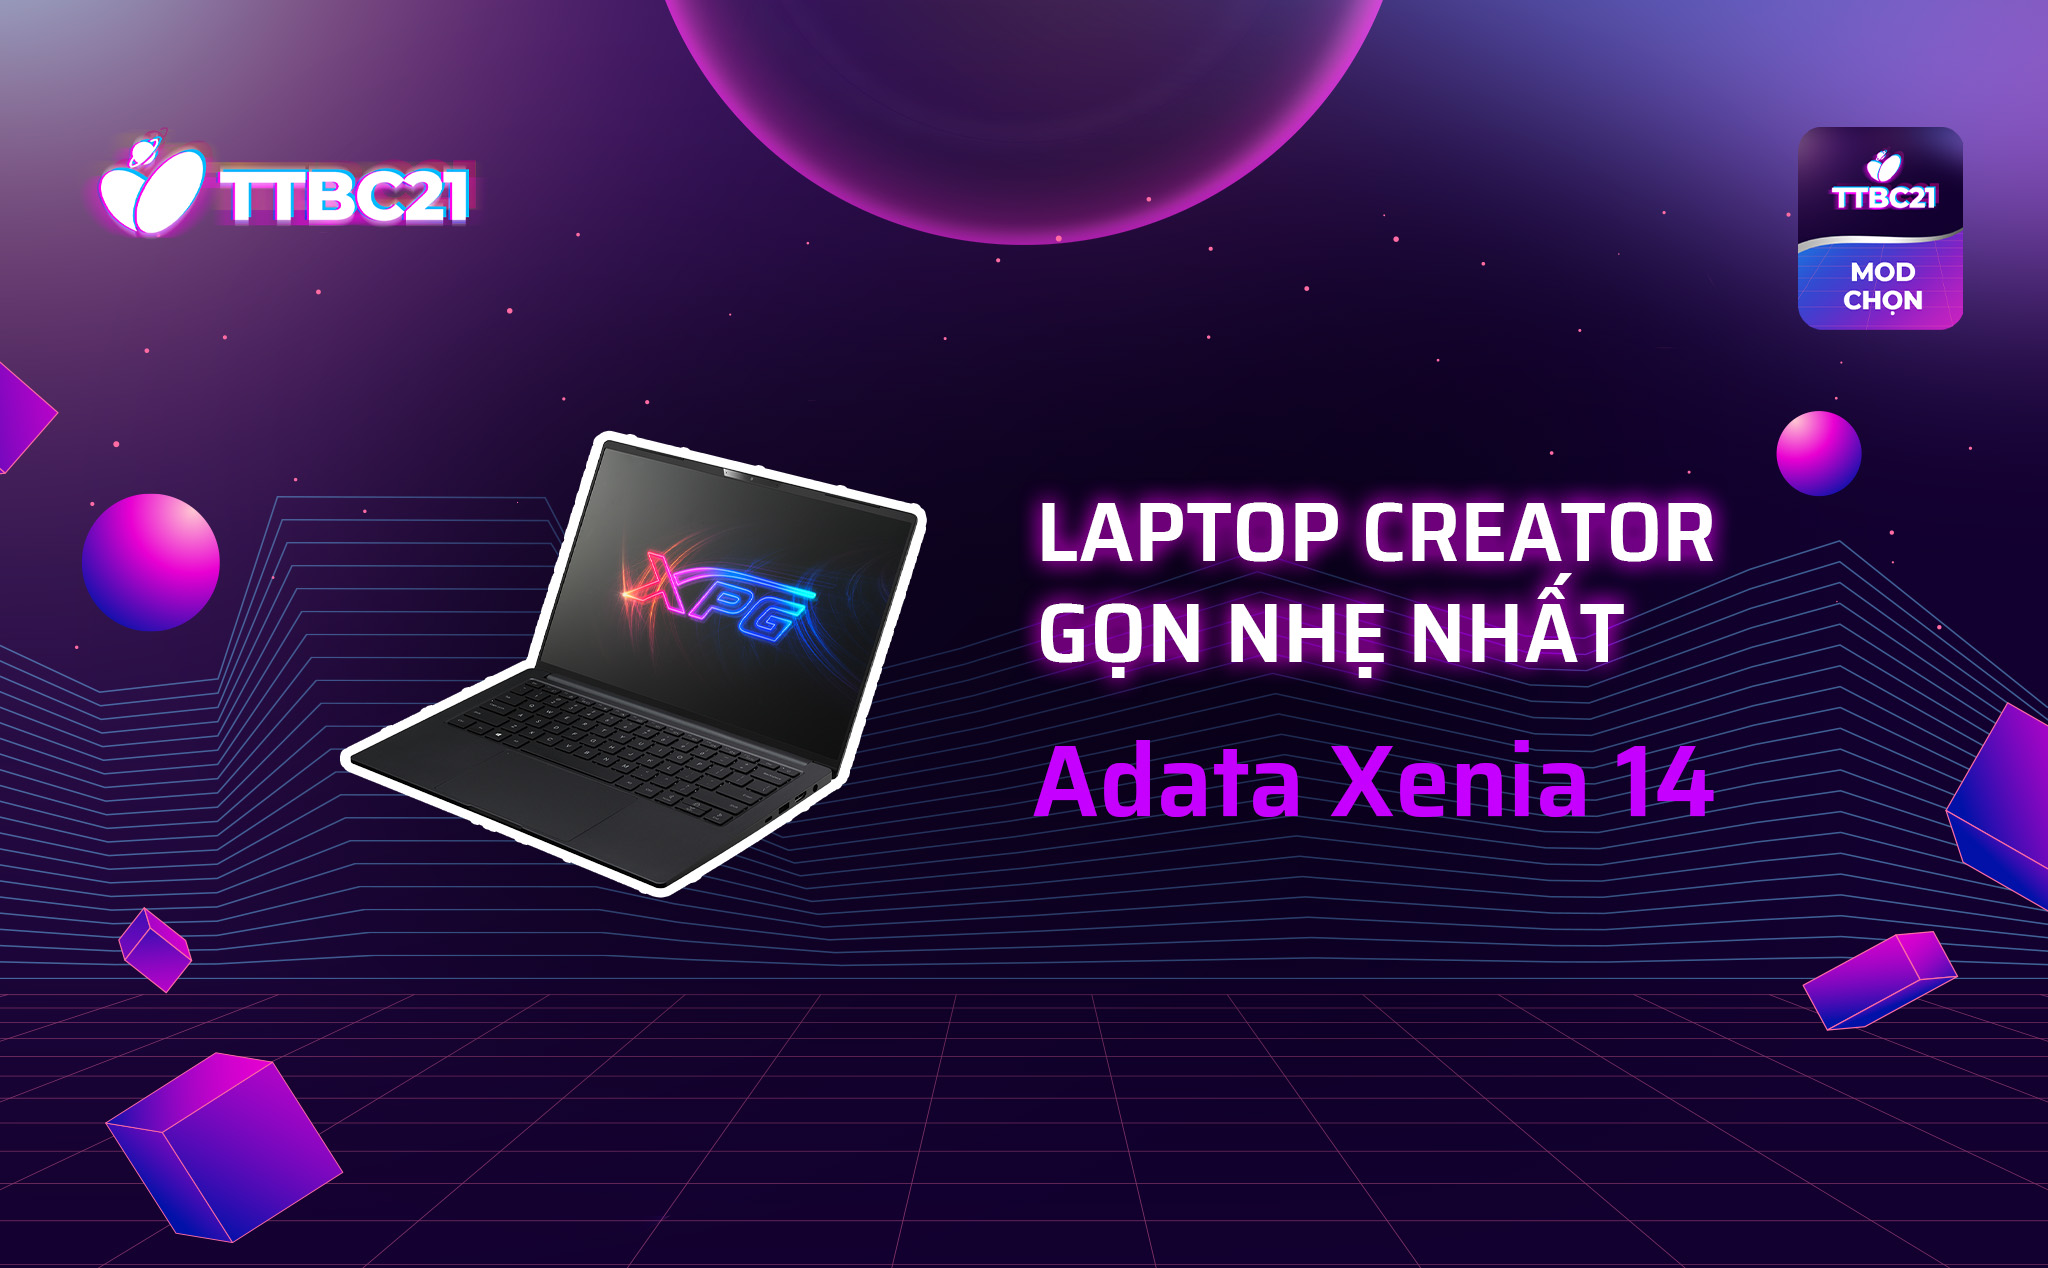 TTBC21 - Mod Choice: Laptop creator gọn nhẹ nhất - Adata Xenia 14